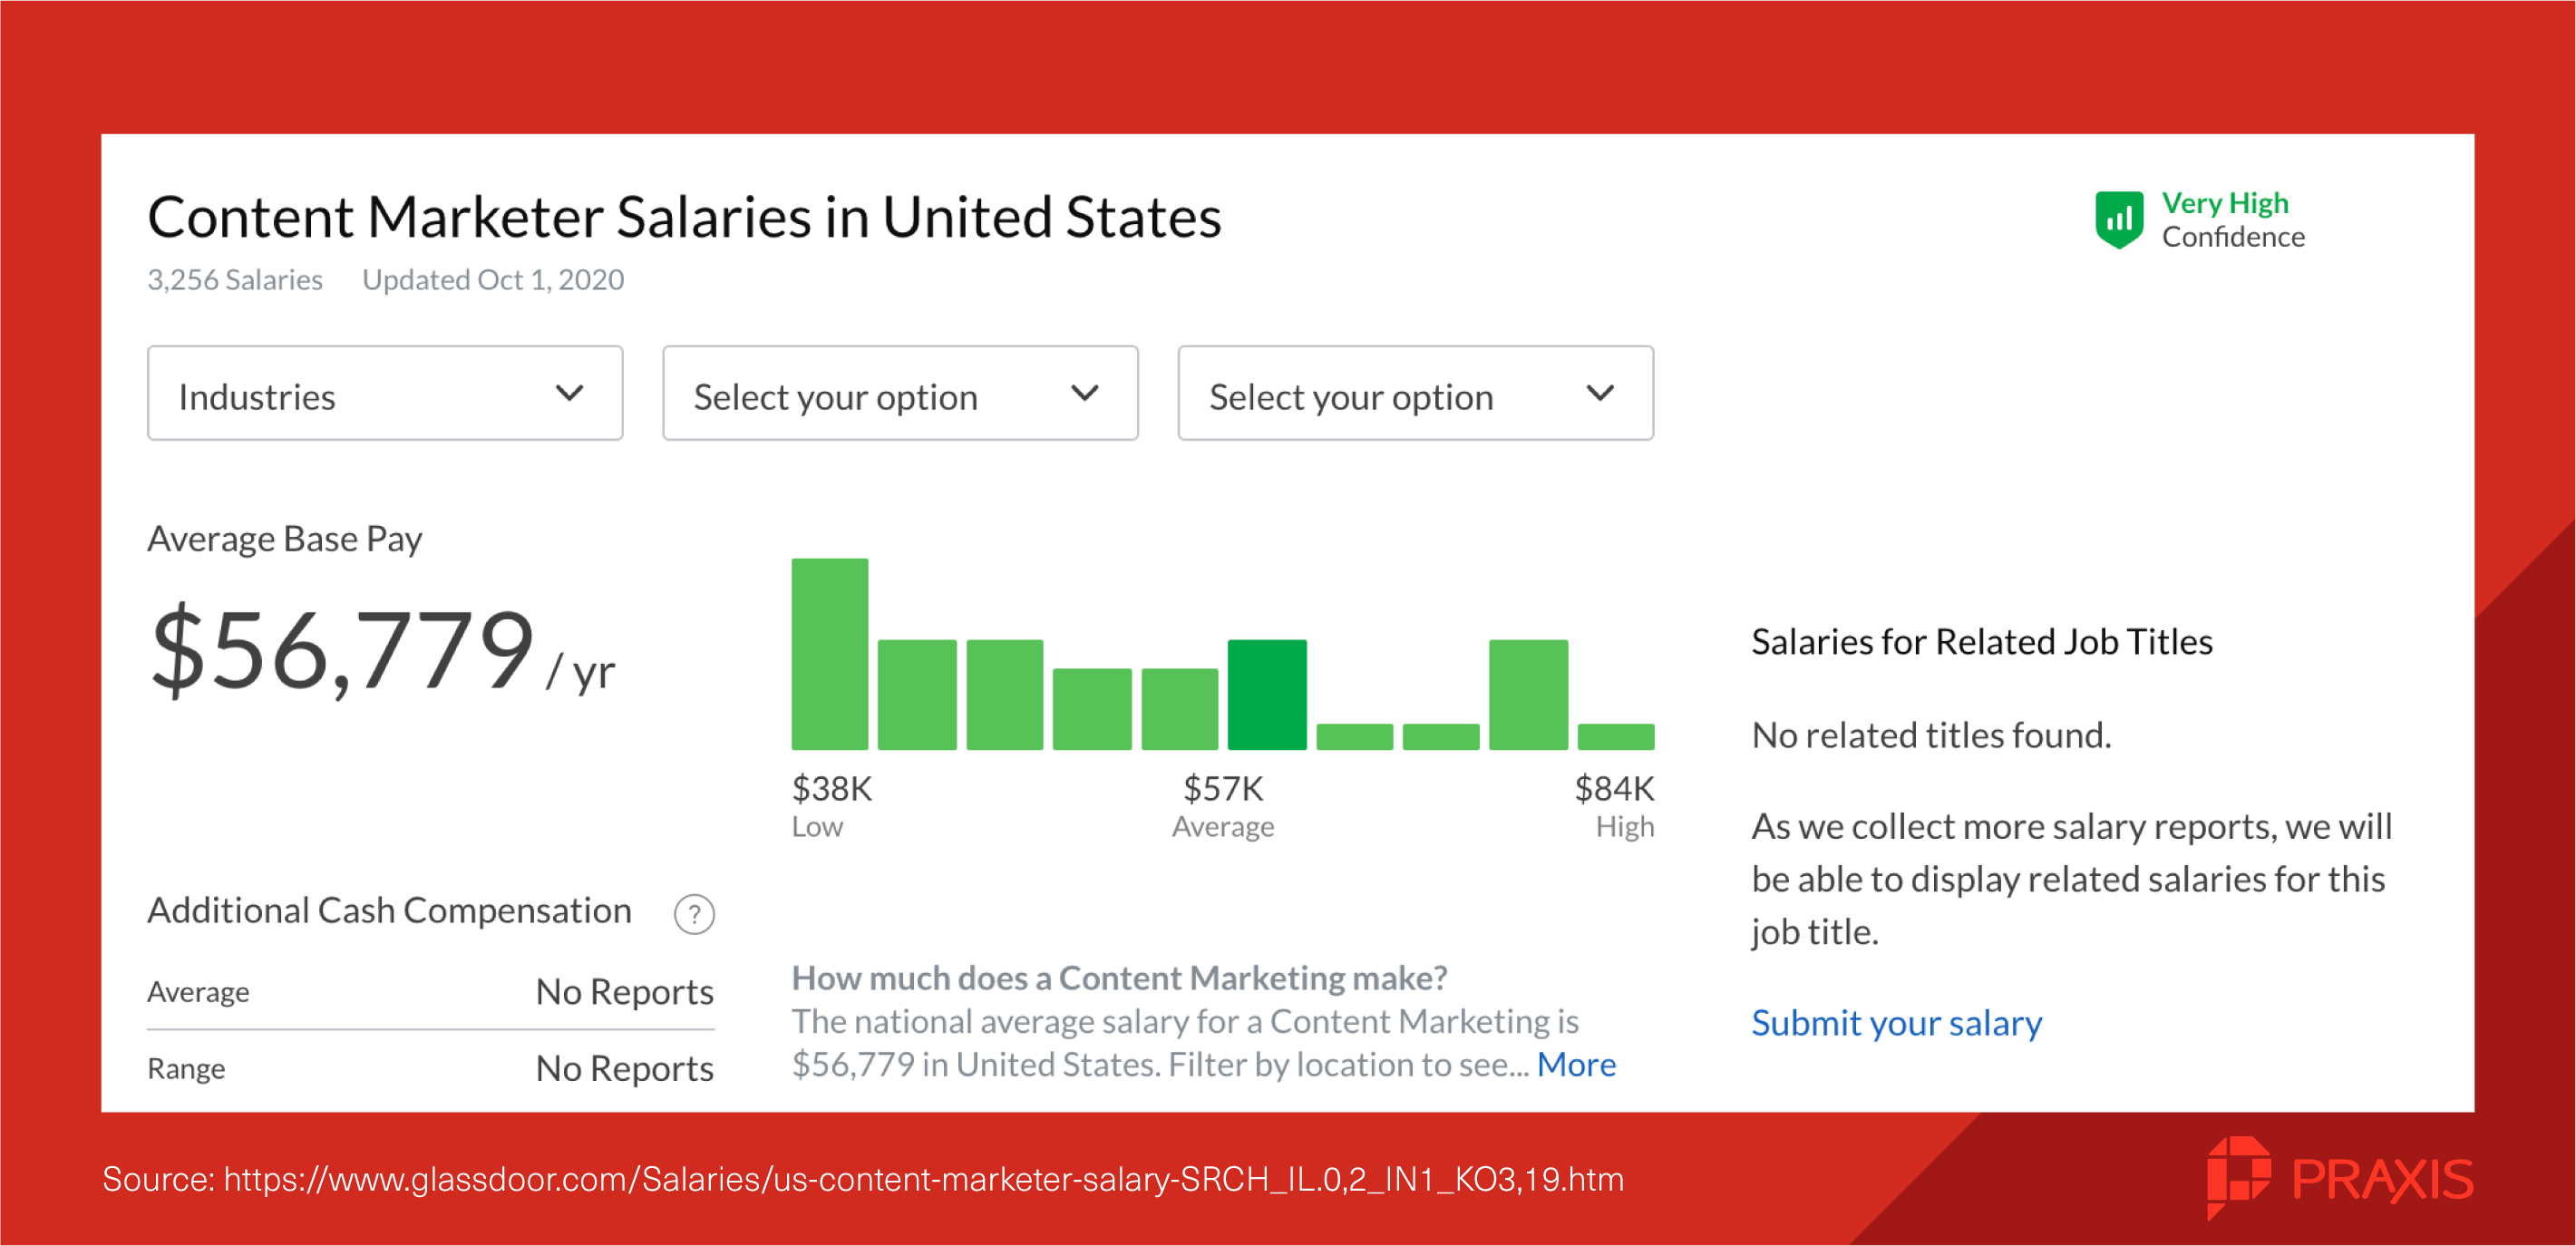 content marketer salaries